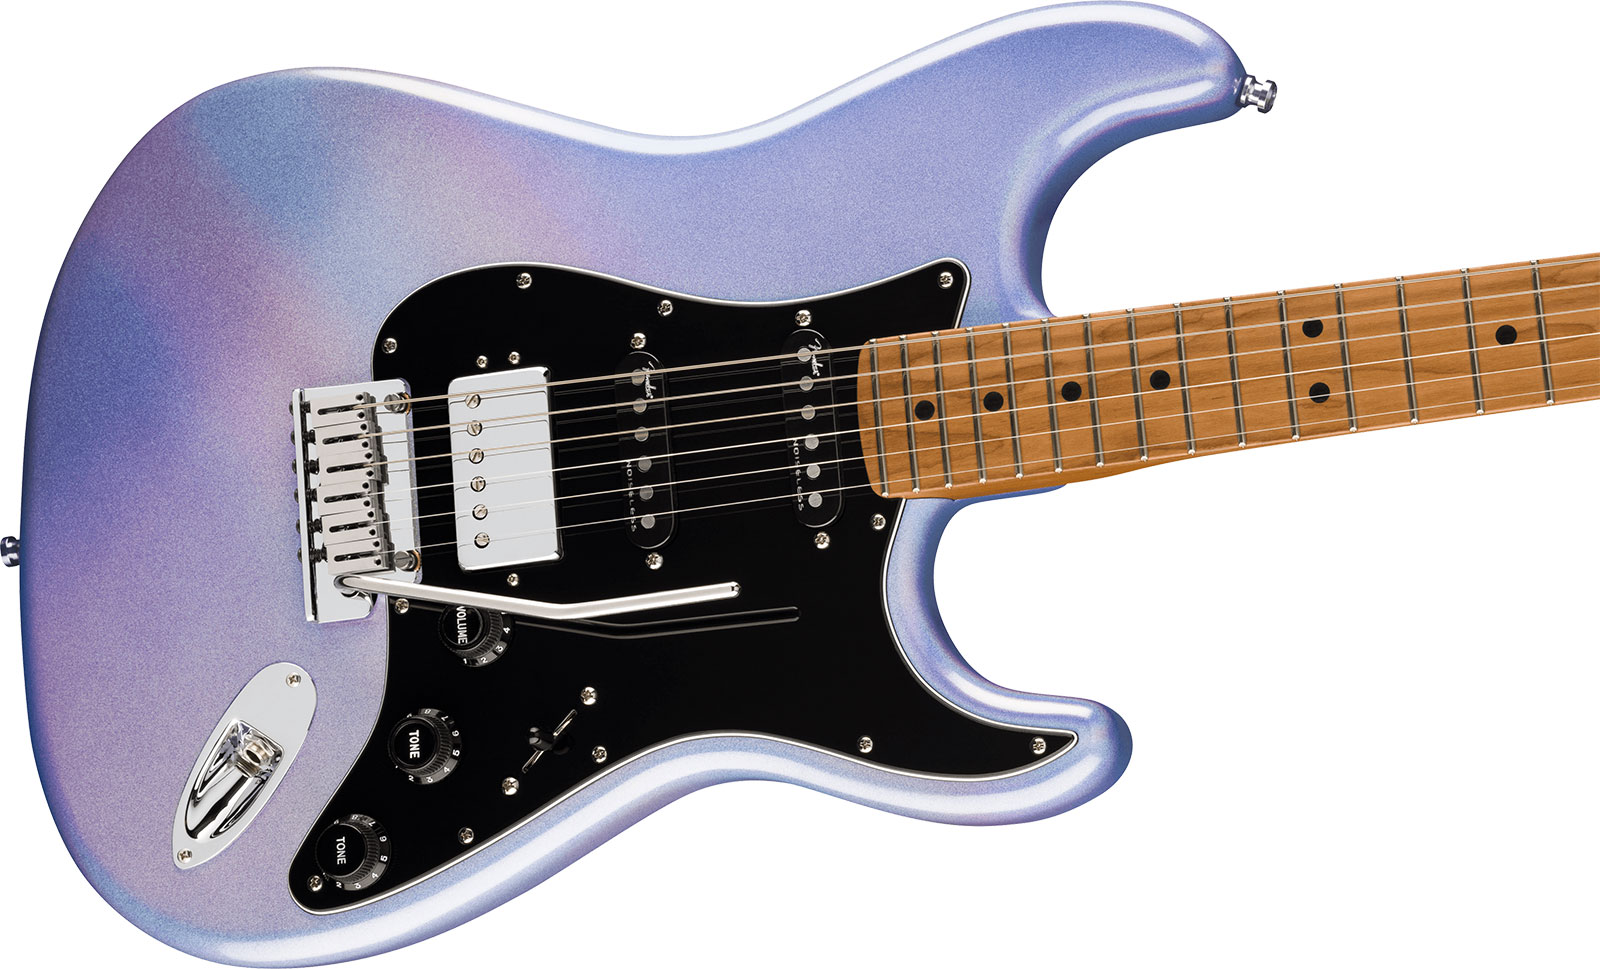 Fender Strat 70th Anniversary American Ultra Ltd Usa Hss Trem Mn - Amethyst - Elektrische gitaar in Str-vorm - Variation 2